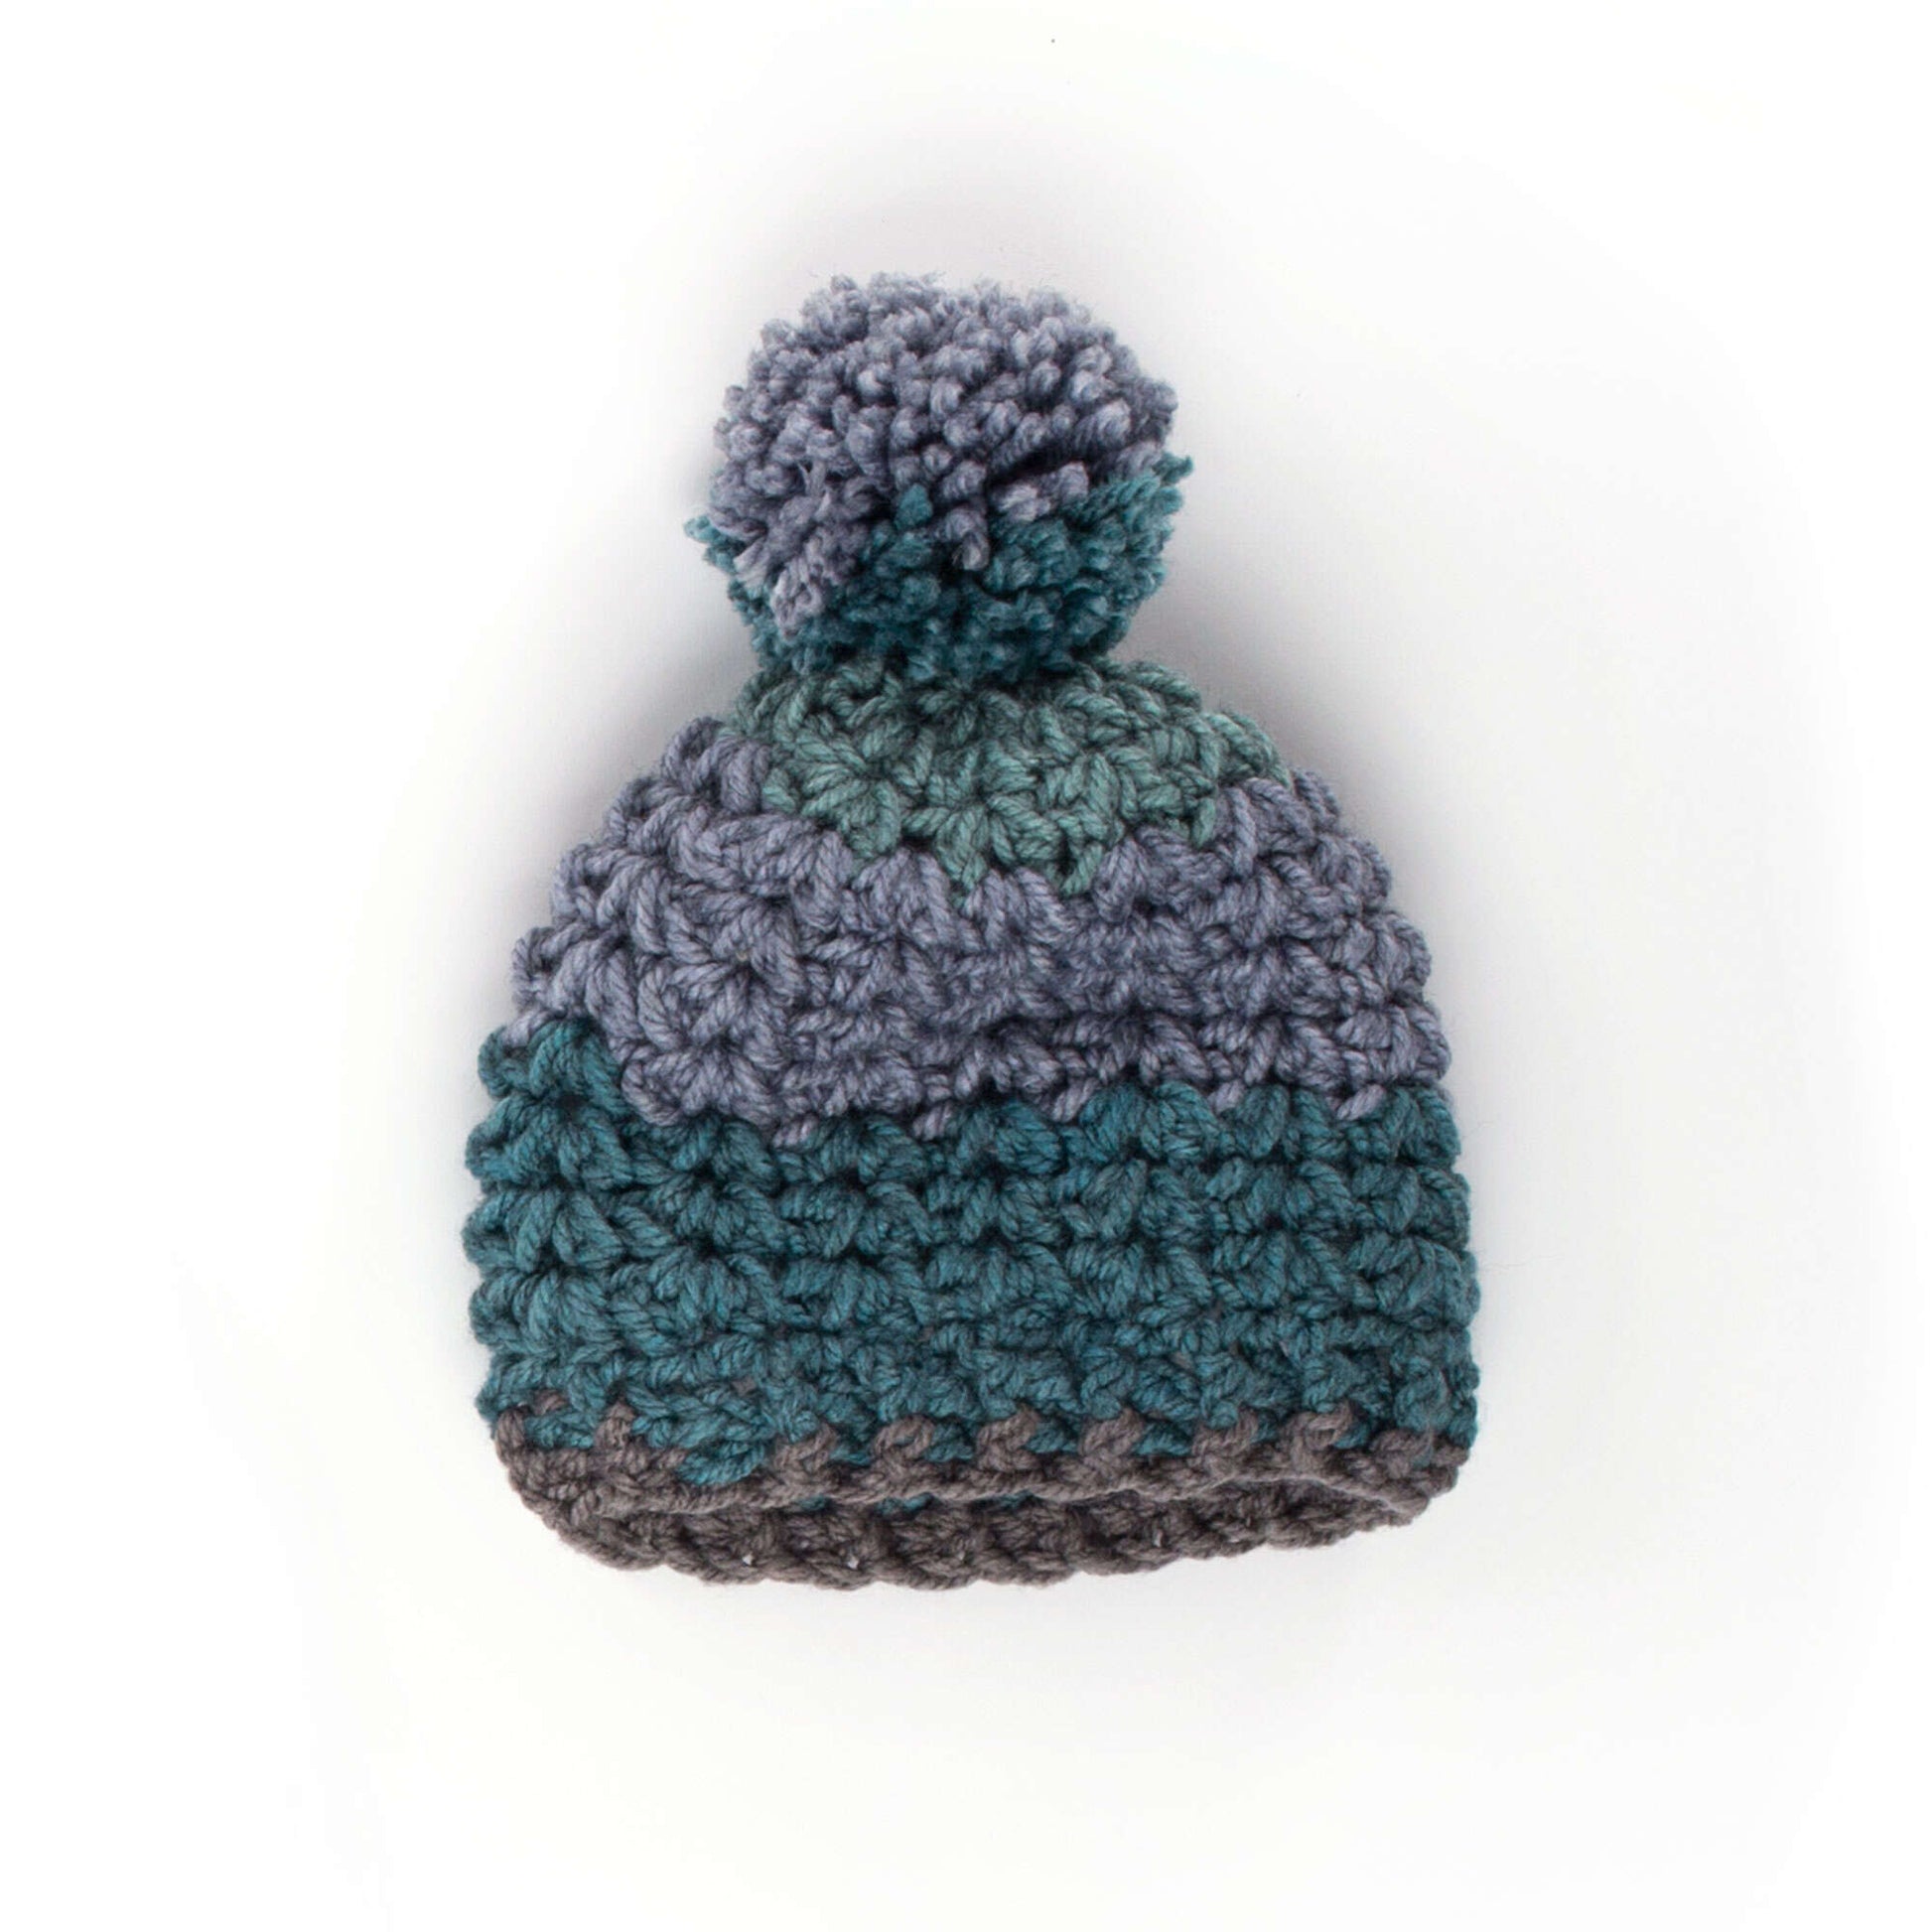 Caron Crochet Winter Hat Single Size